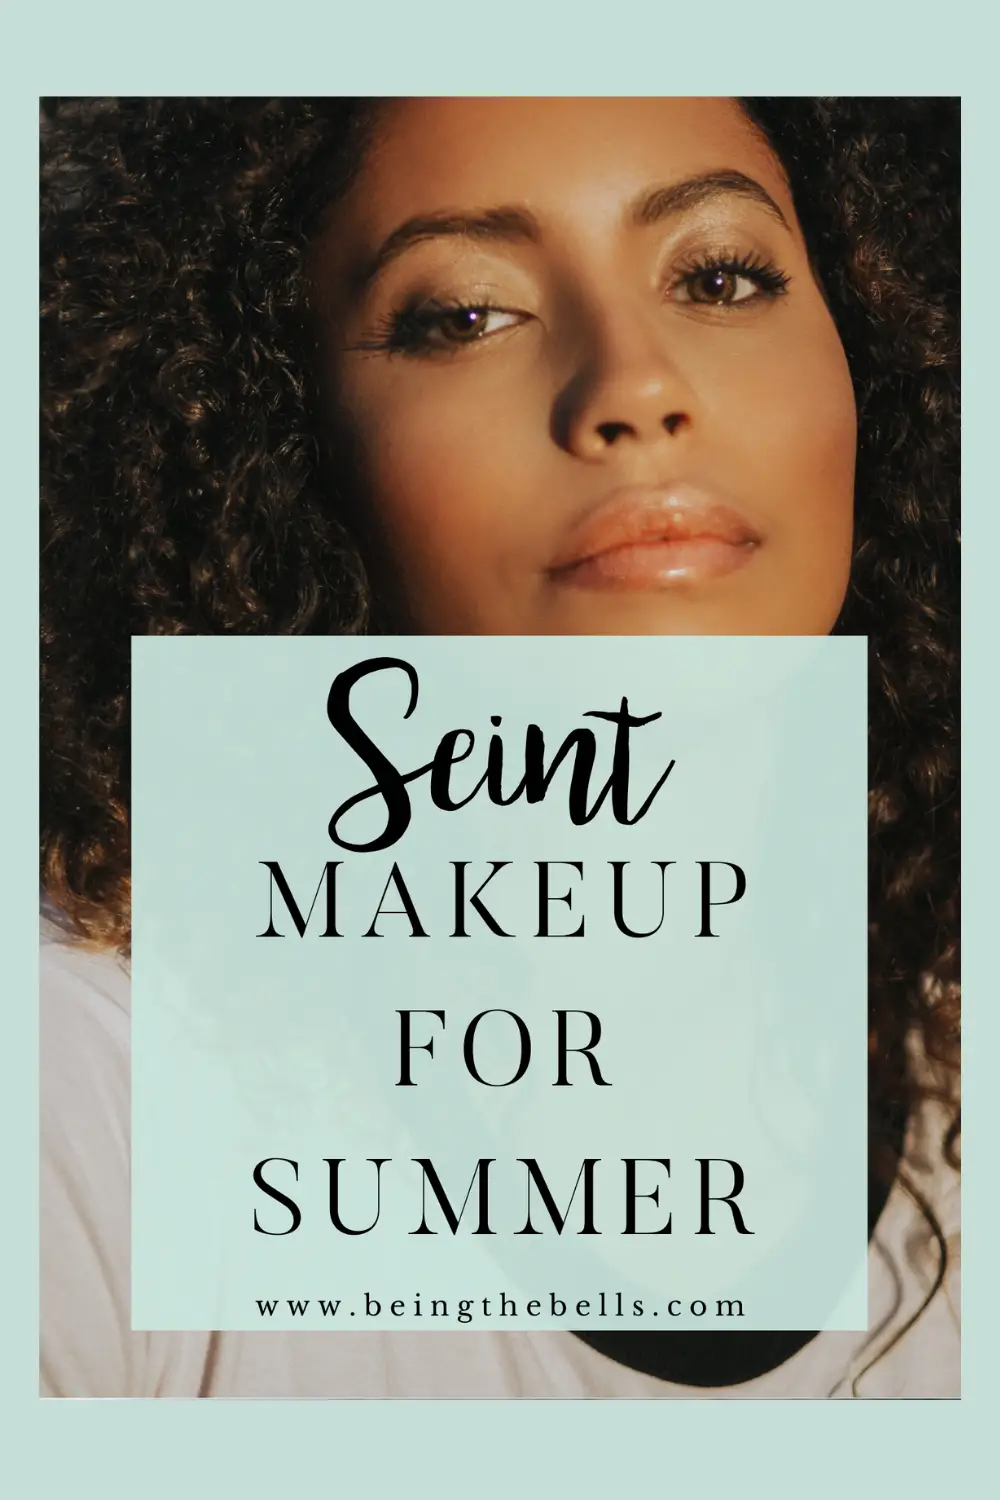 Seint Makeup For Summer